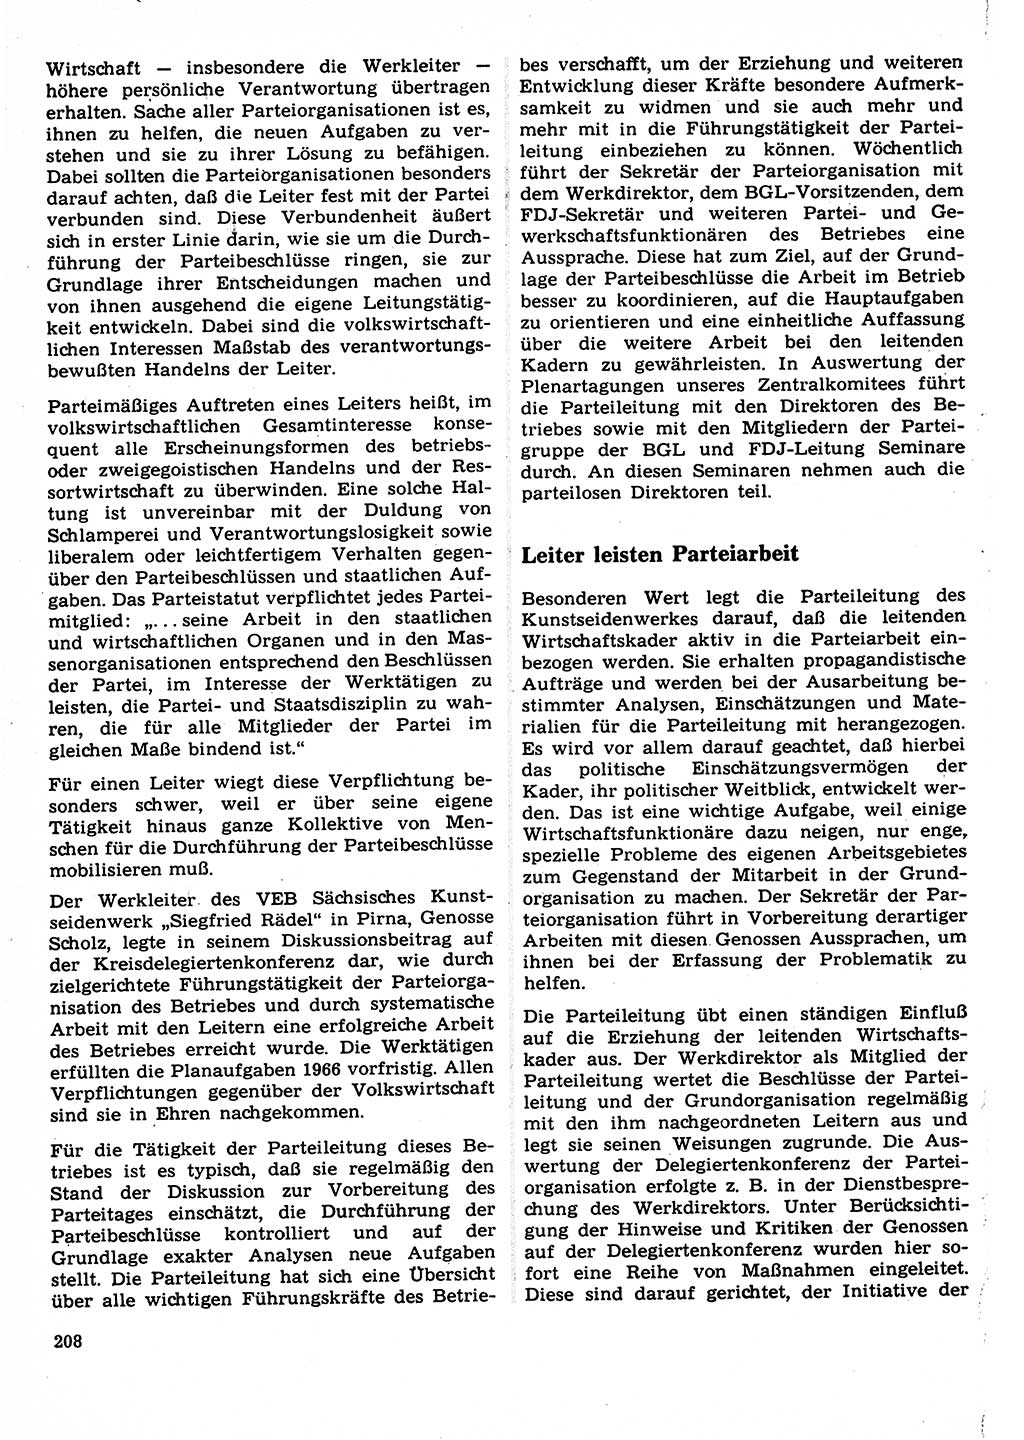 Neuer Weg (NW), Organ des Zentralkomitees (ZK) der SED (Sozialistische Einheitspartei Deutschlands) für Fragen des Parteilebens, 22. Jahrgang [Deutsche Demokratische Republik (DDR)] 1967, Seite 208 (NW ZK SED DDR 1967, S. 208)